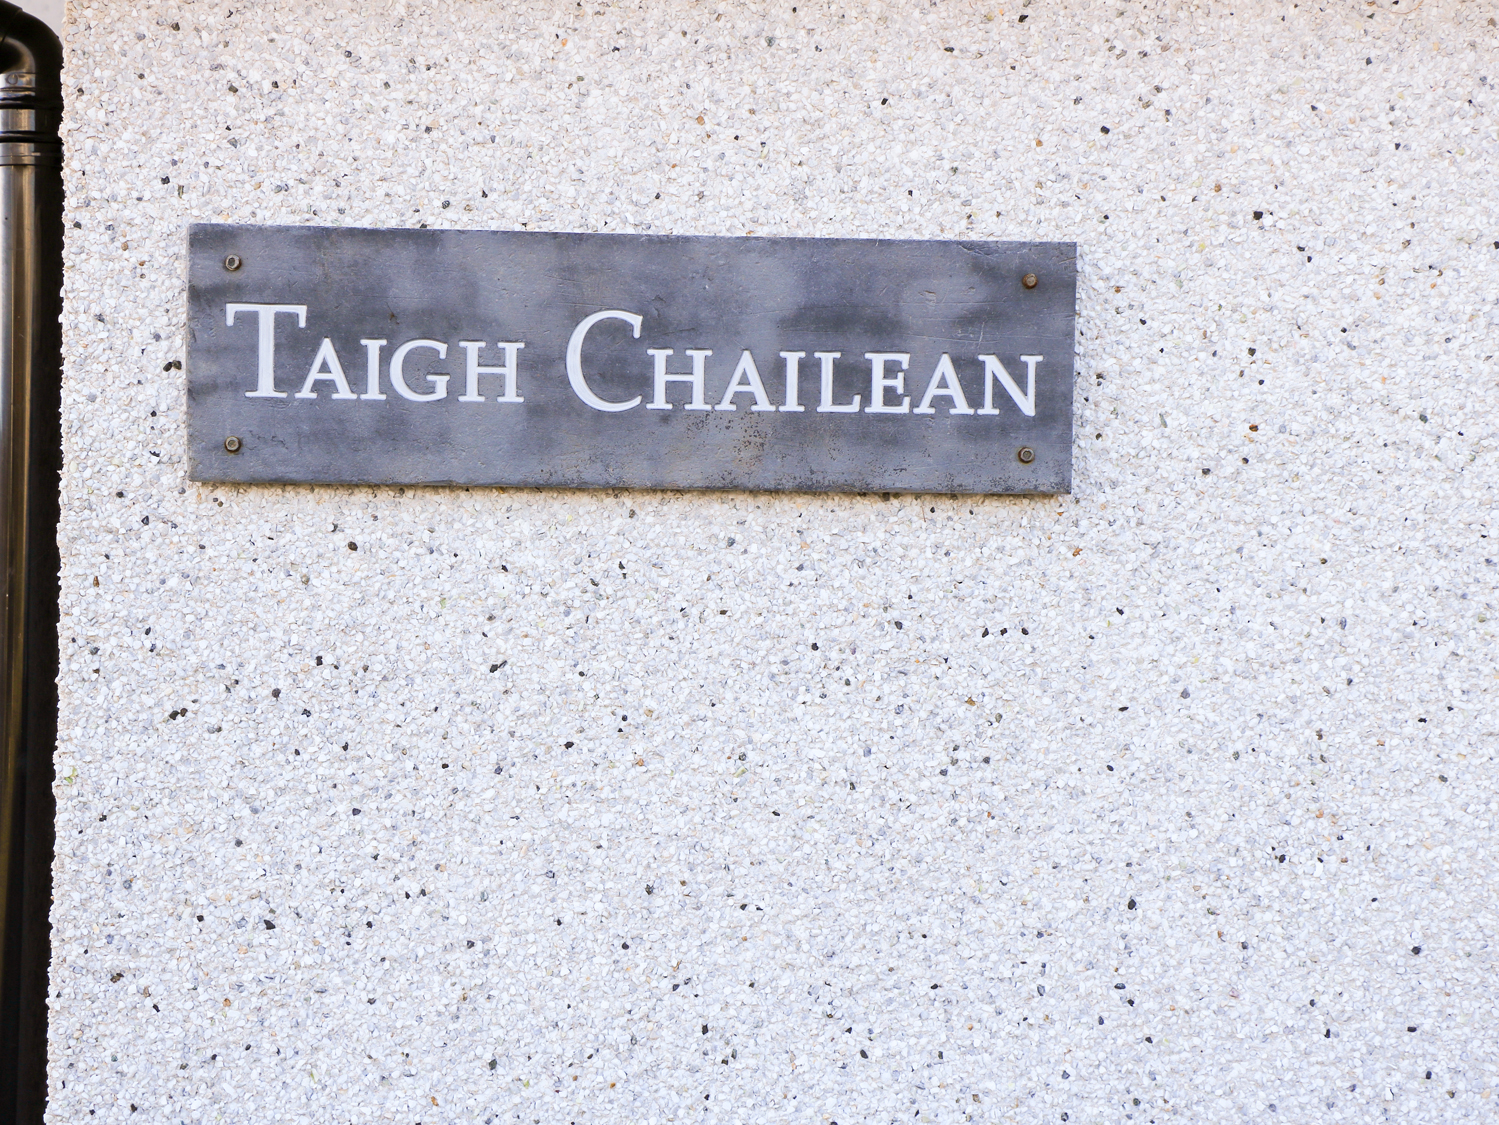 Taigh Chailean, Scotland